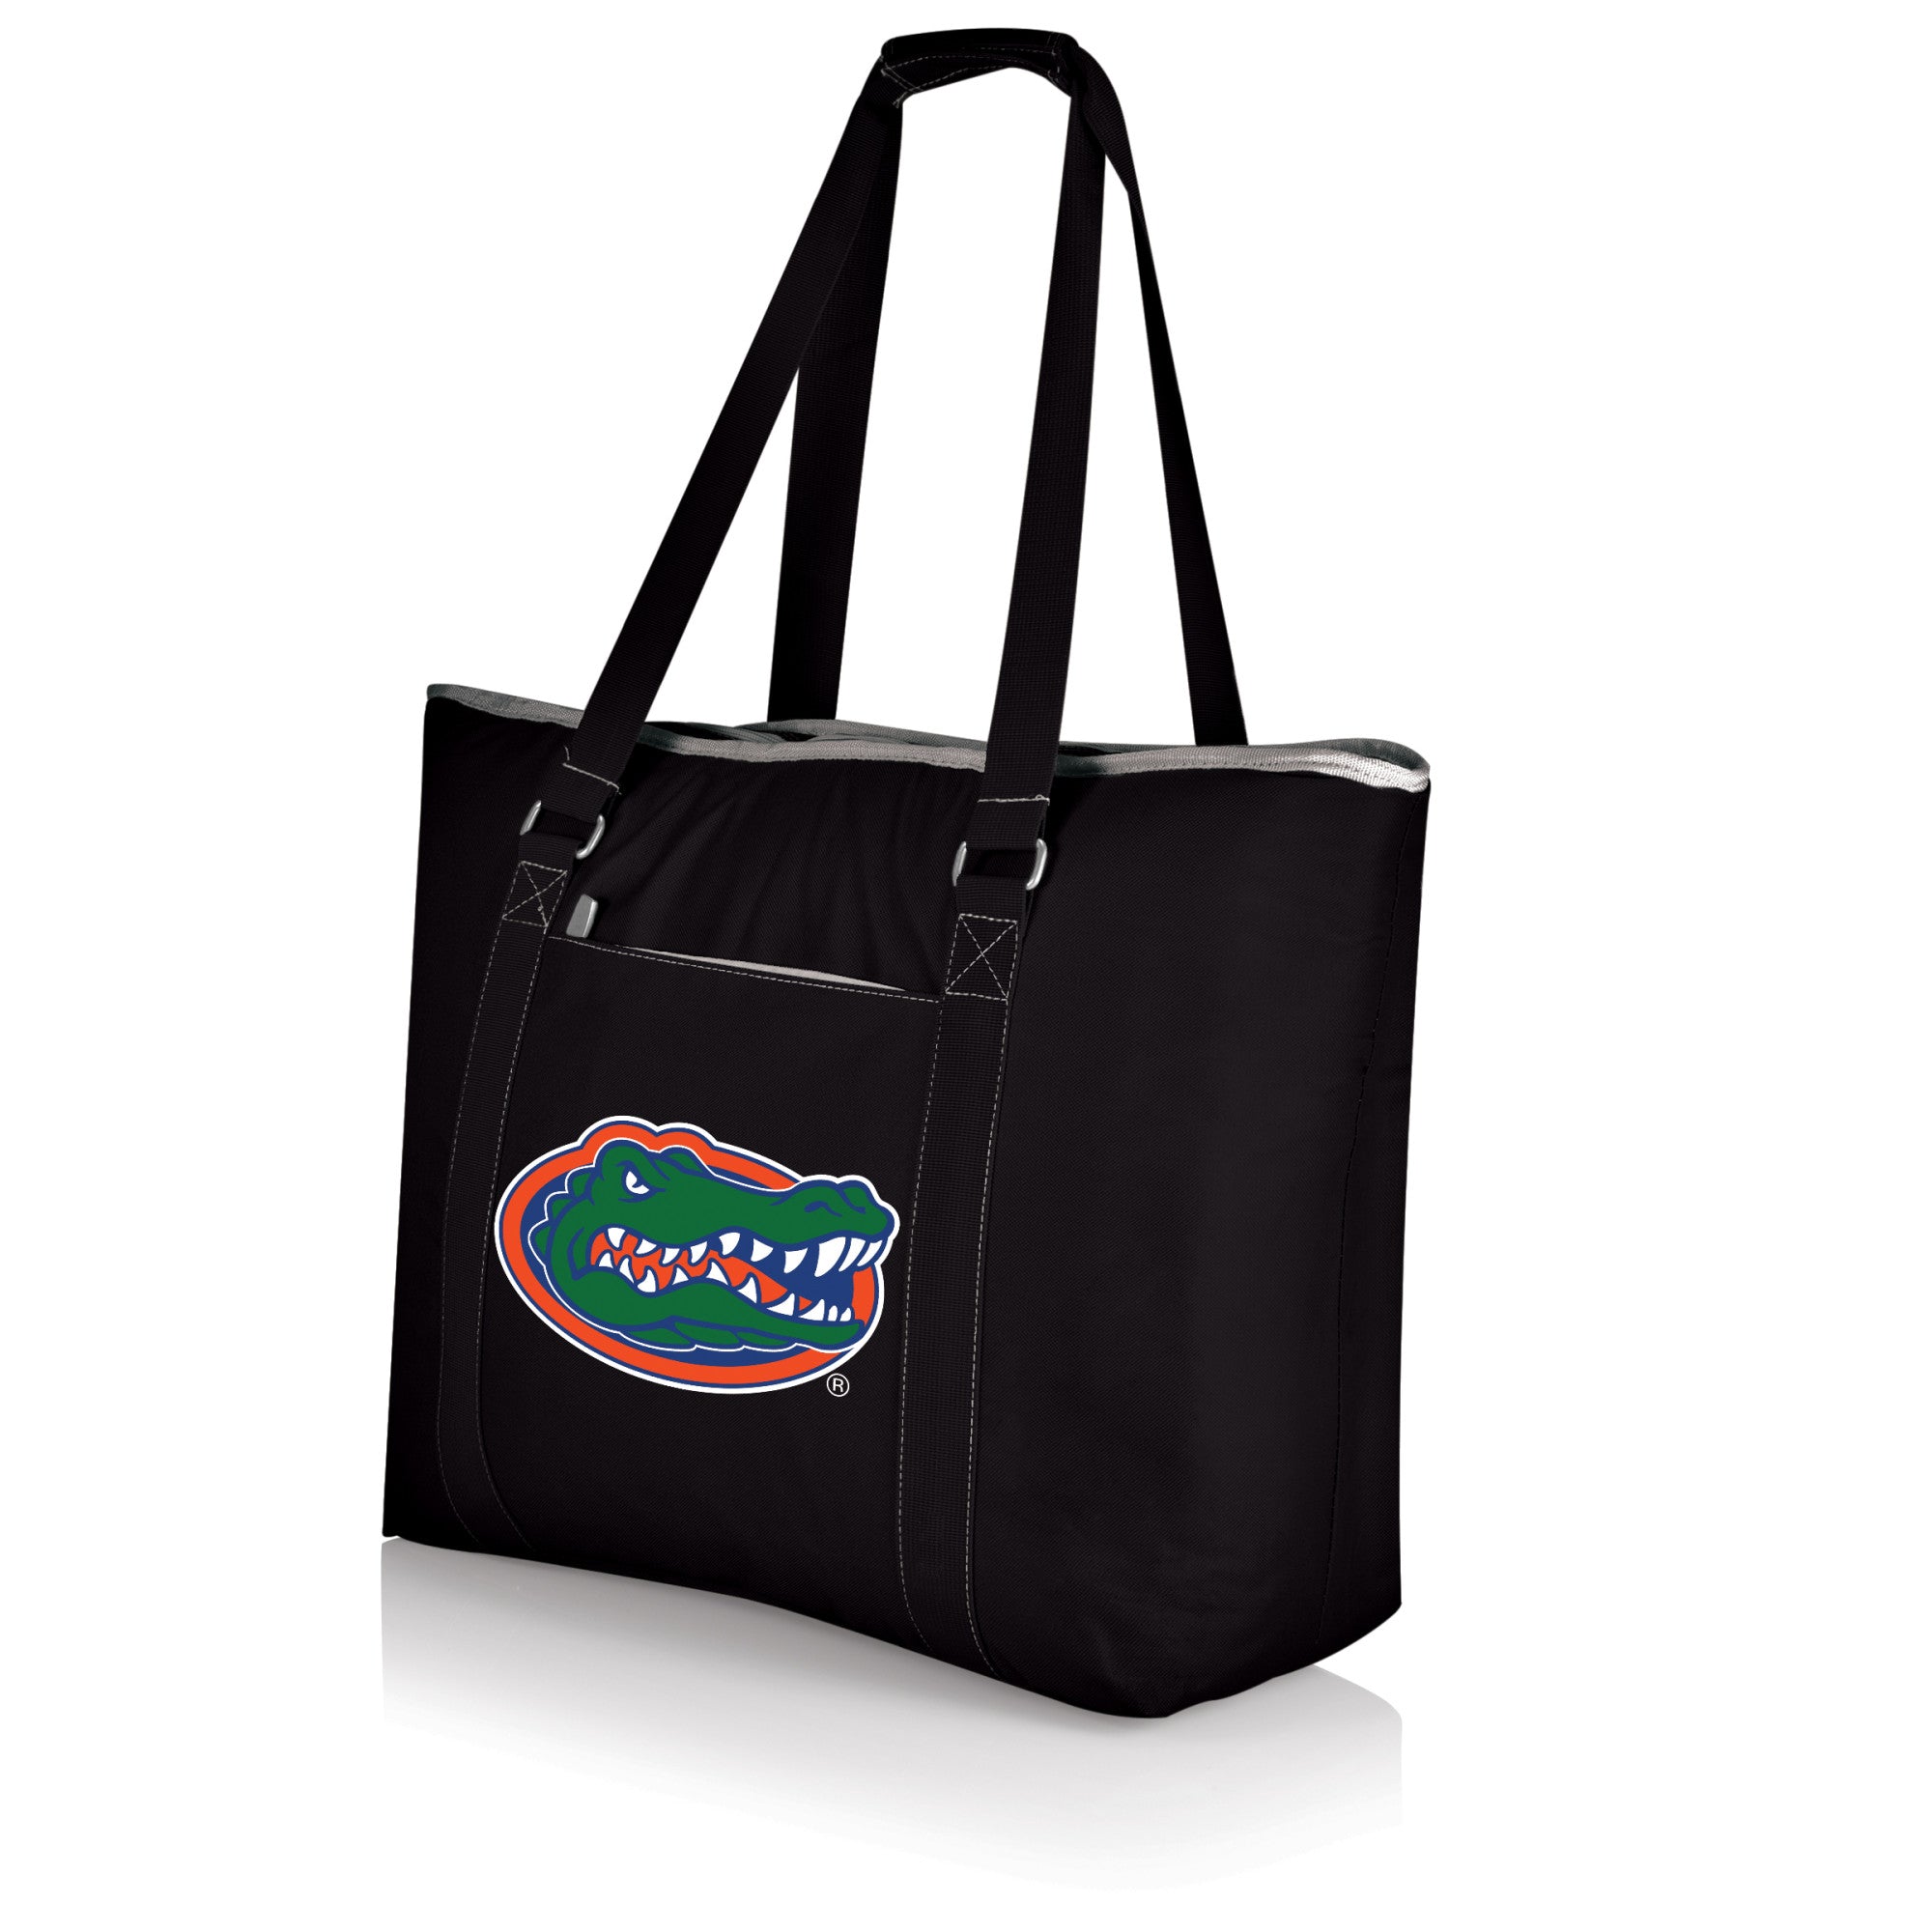 Florida Gators - Tahoe XL Cooler Tote Bag